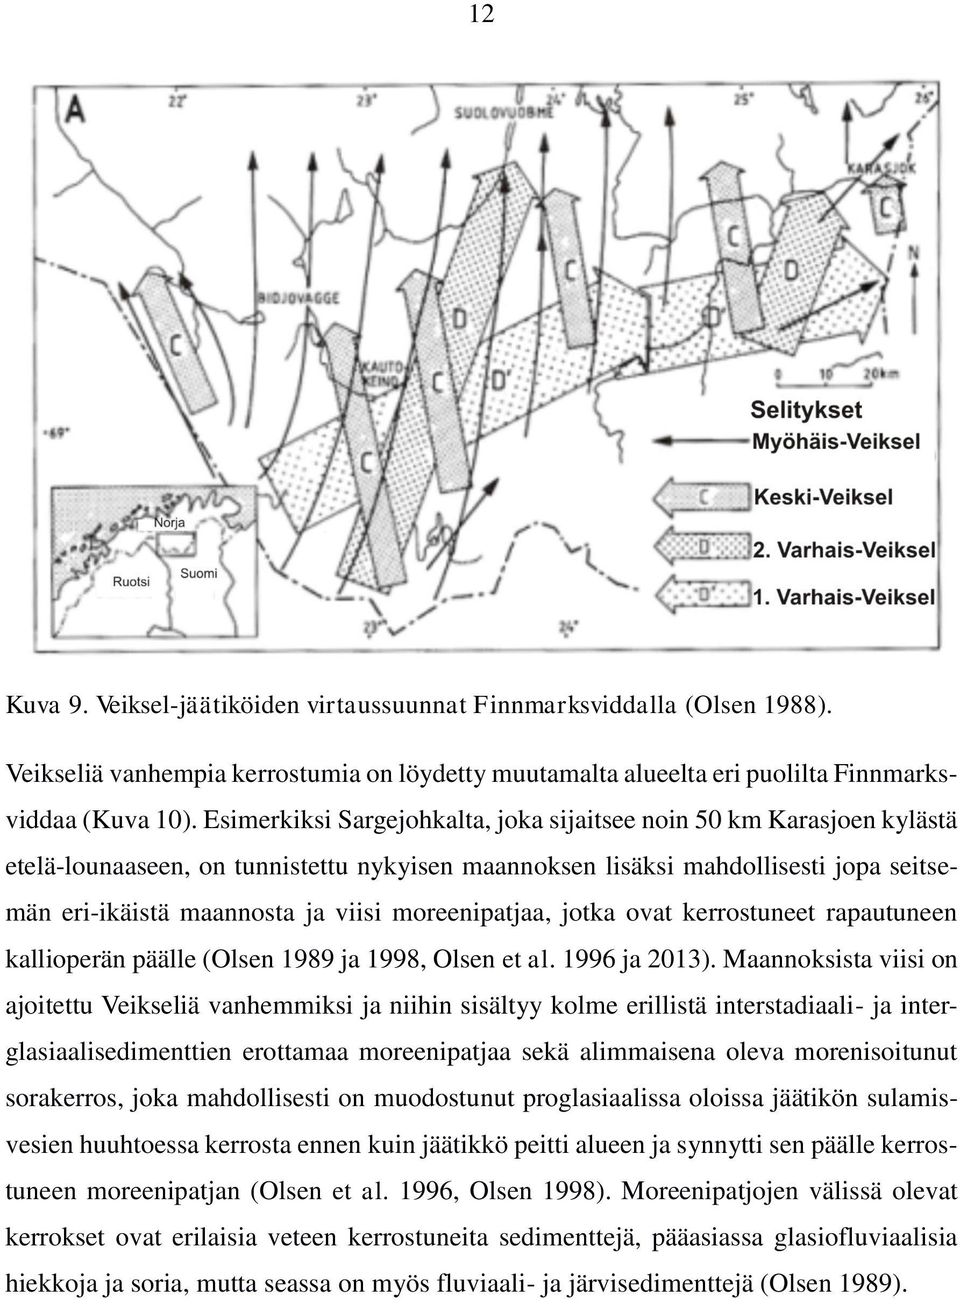 moreenipatjaa, jotka ovat kerrostuneet rapautuneen kallioperän päälle (Olsen 1989 ja 1998, Olsen et al. 1996 ja 2013).